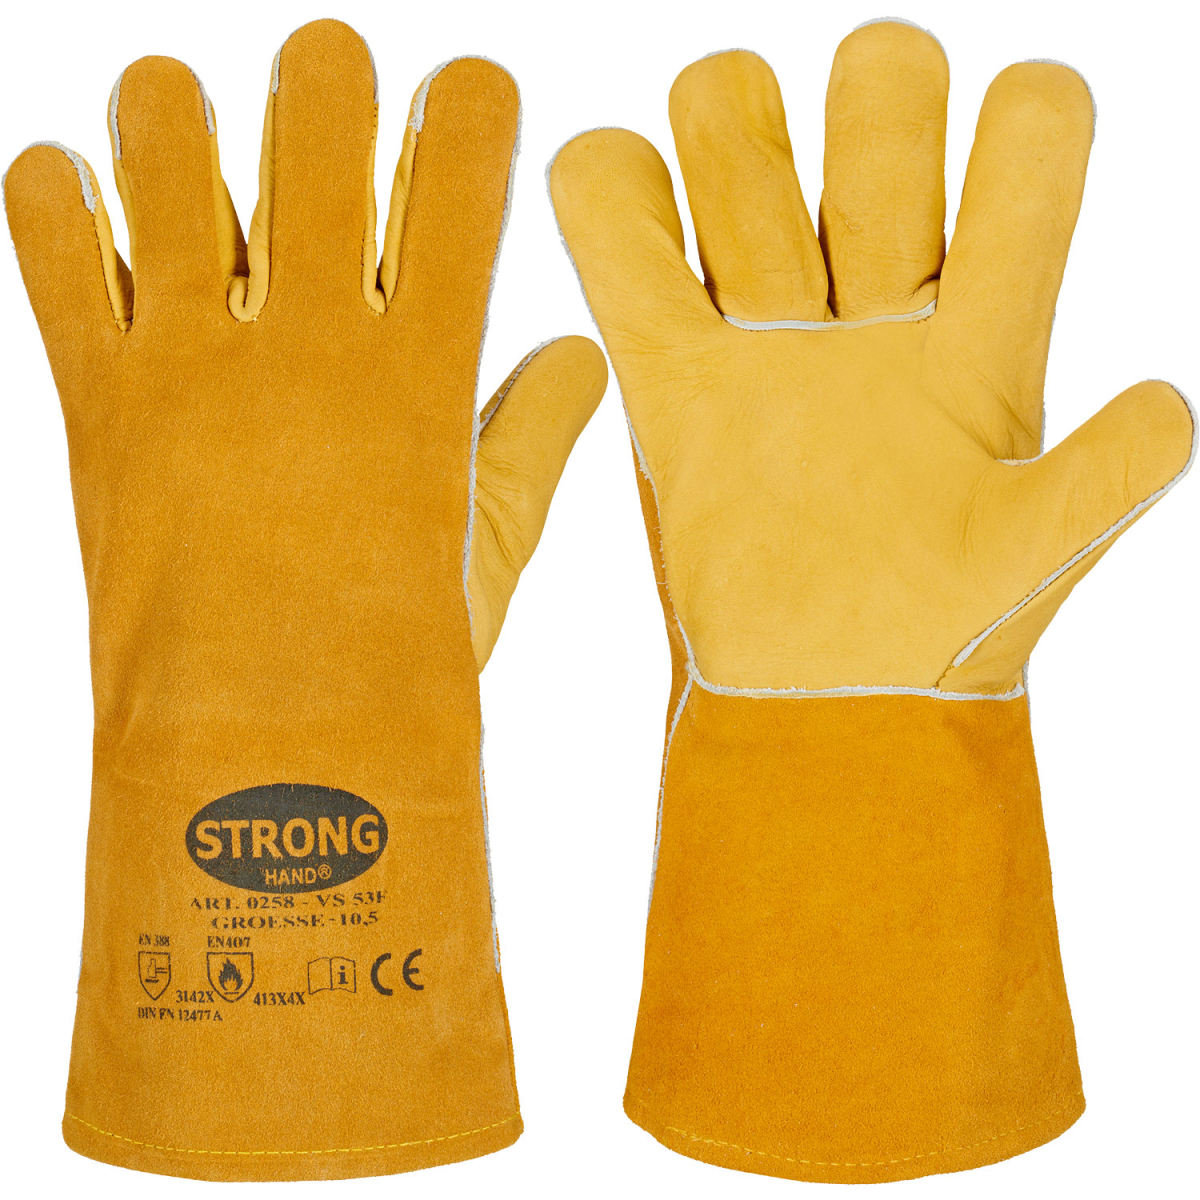 24 Paar Arbeitsschutz-Handschuhe Größe:10,5 aus Rind-/Spaltleder EN388-CAT.2 CE 